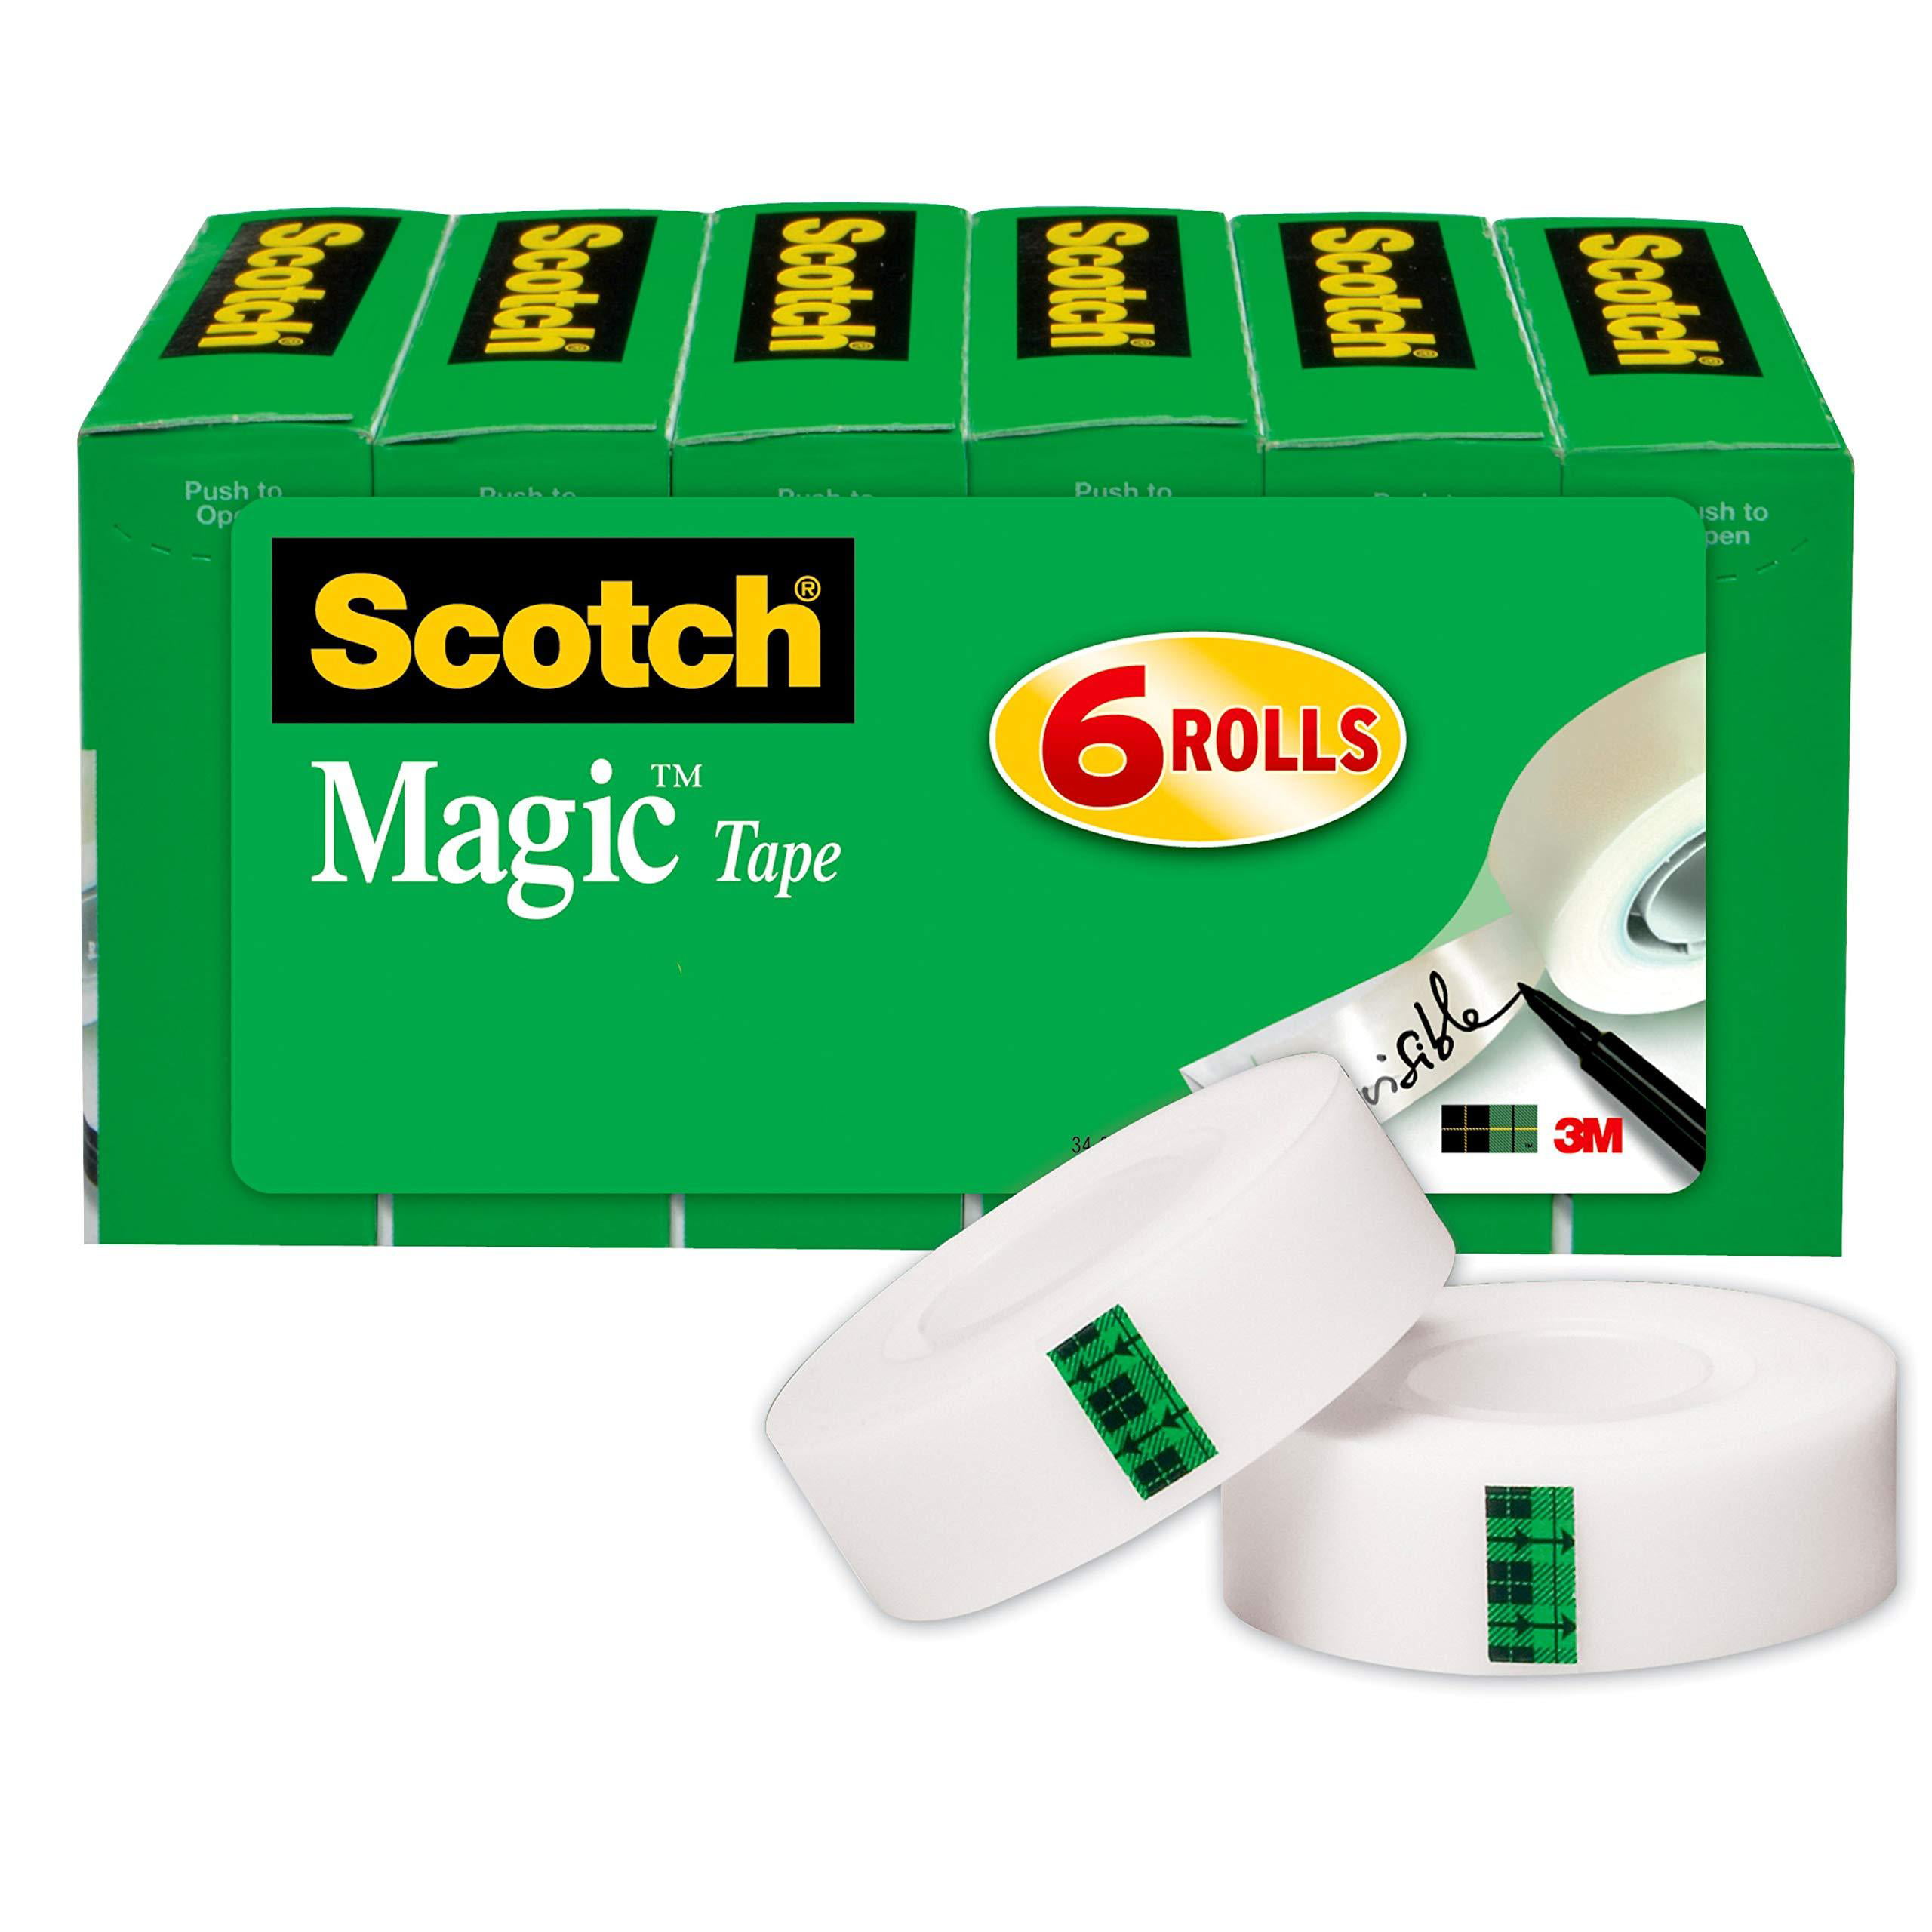 Scotch Magic Tape with Dispenser - FLAX art & design